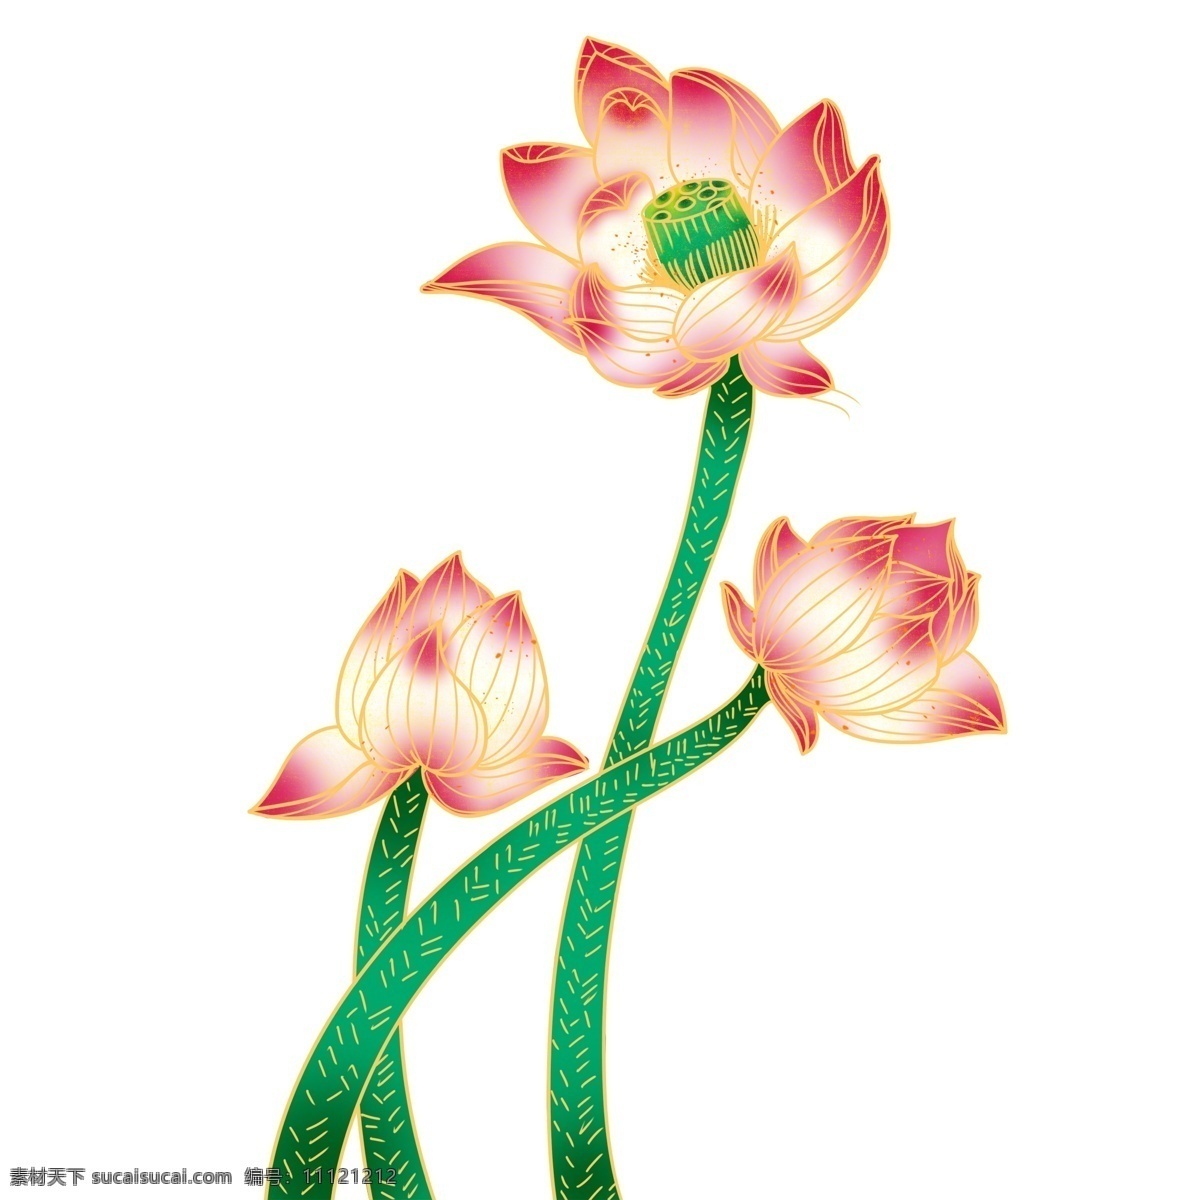 精美 荷花 植物 装饰 荷叶 卡通 彩色 小清新 创意 手绘 绘画元素 现代 简约 图案